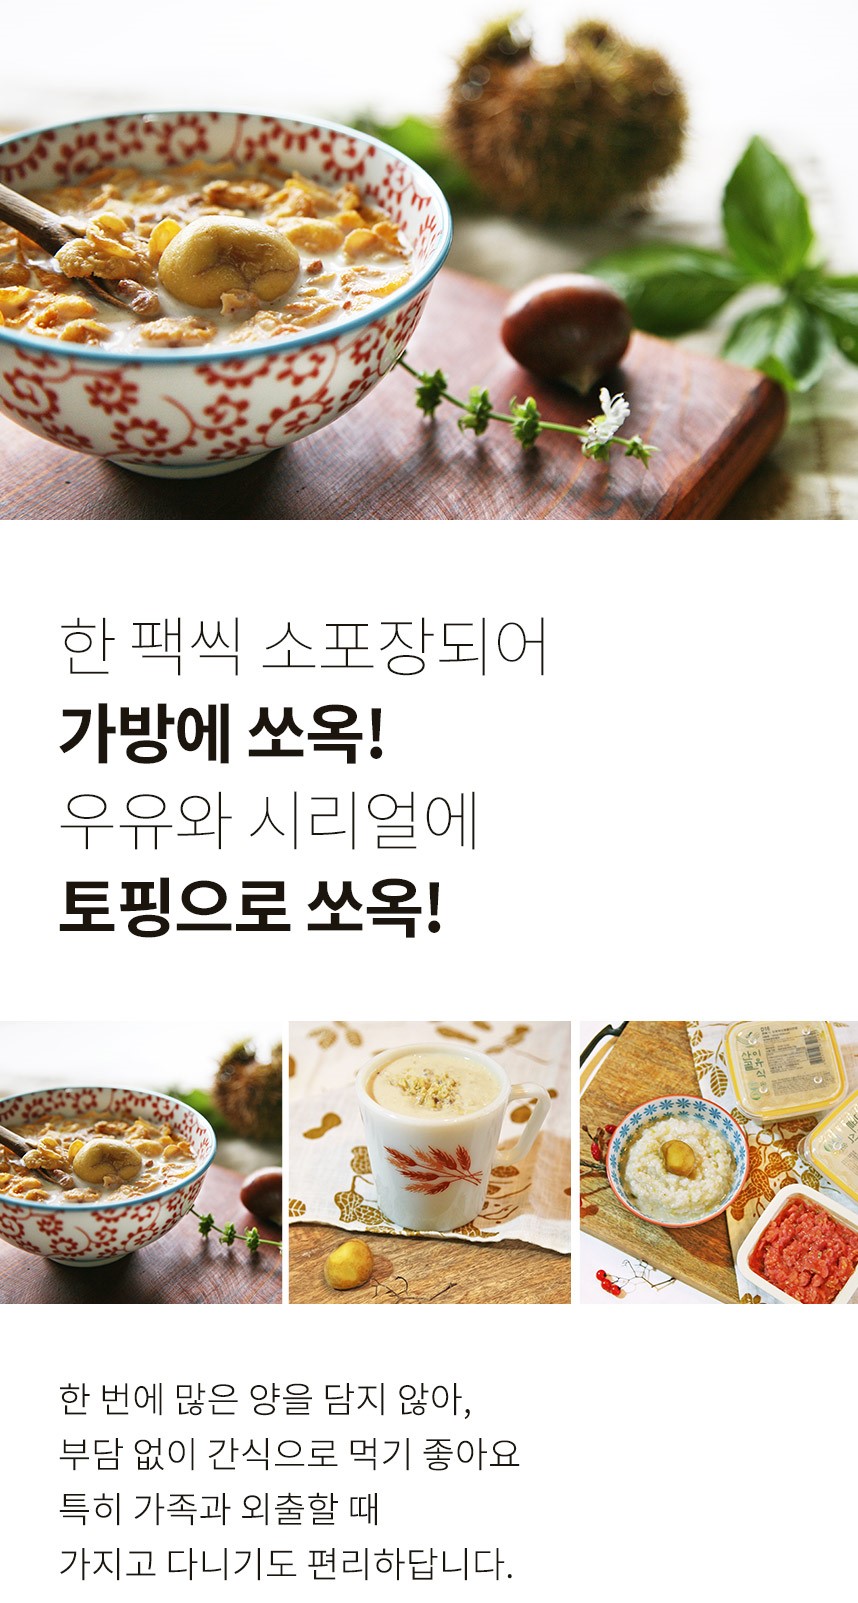 韓國食品-[Ecomommeal] Sangol Pure Natural Chestnut 50g